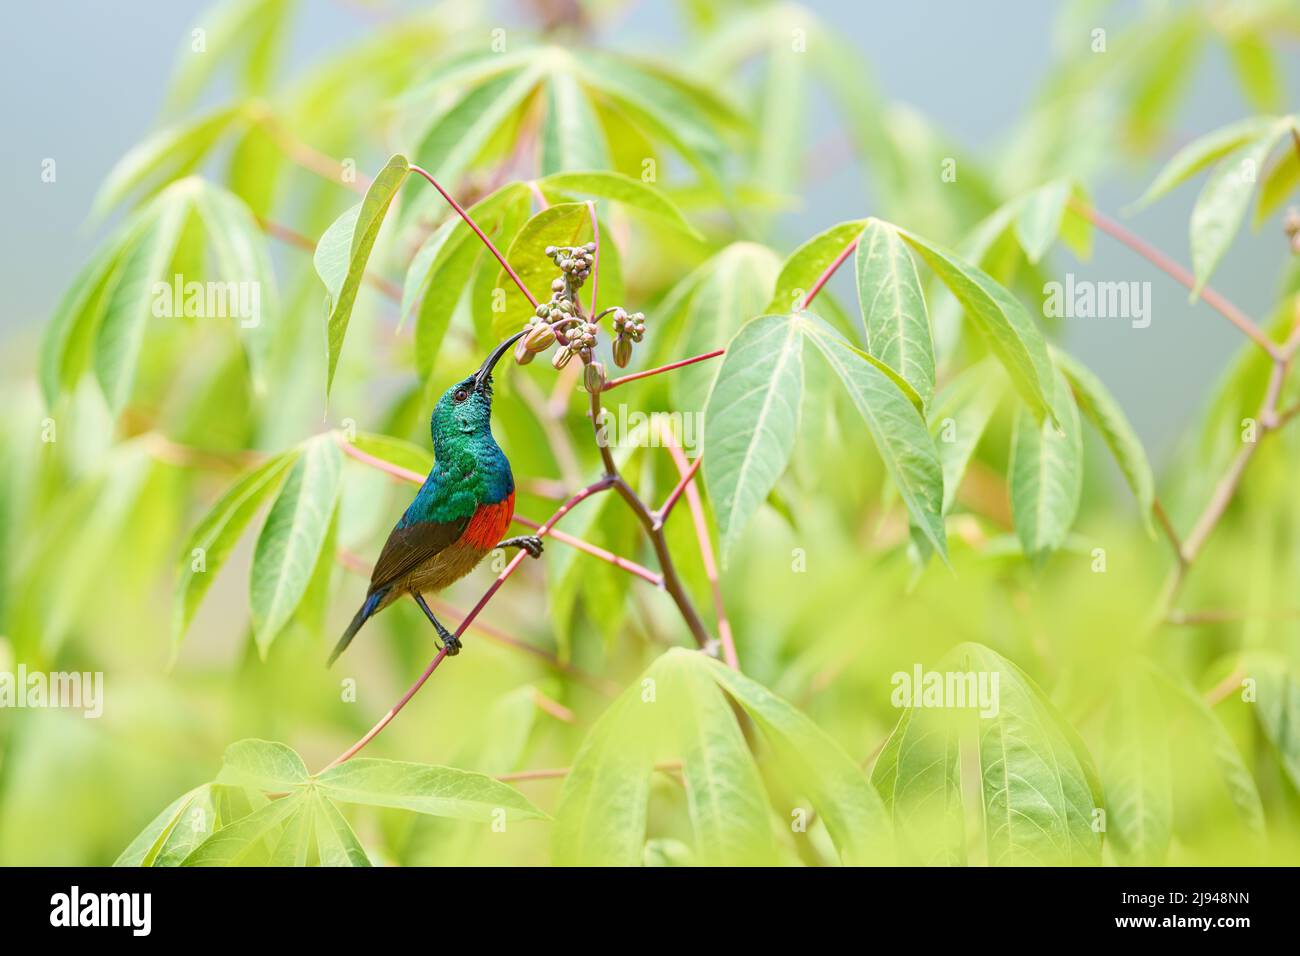 Mariqua Sunbird, Cinnyris mariquensis, Vogel in der grünen Vegetation, Uganda. Afrika-Sonnenvögel, die auf dem Ast sitzen. Grüner, gelber, roter Vogel im Nat Stockfoto